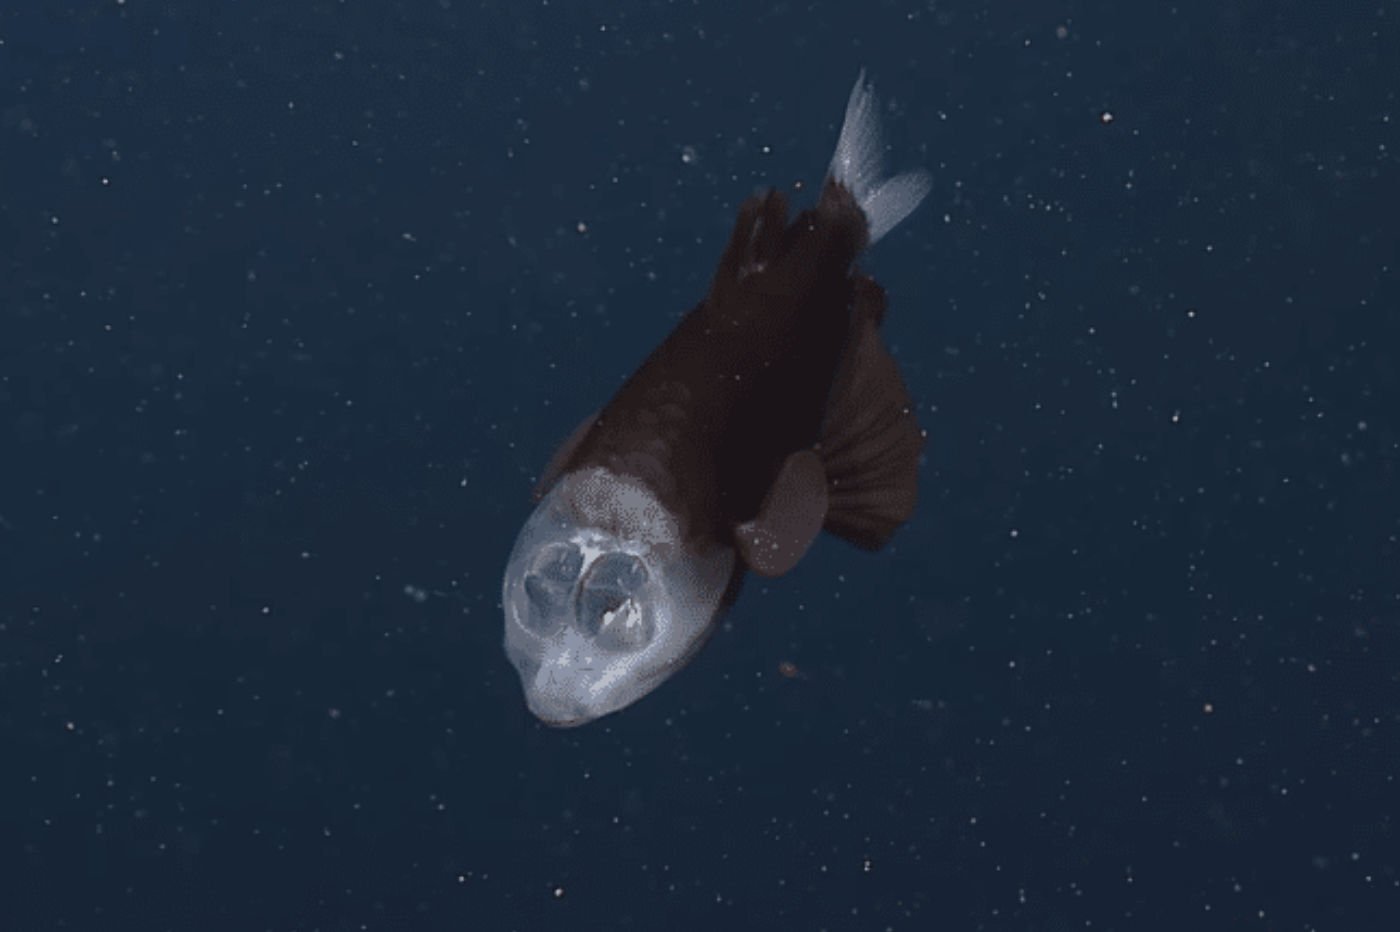 La tête de ce poisson n'est pas vide, elle est transparente